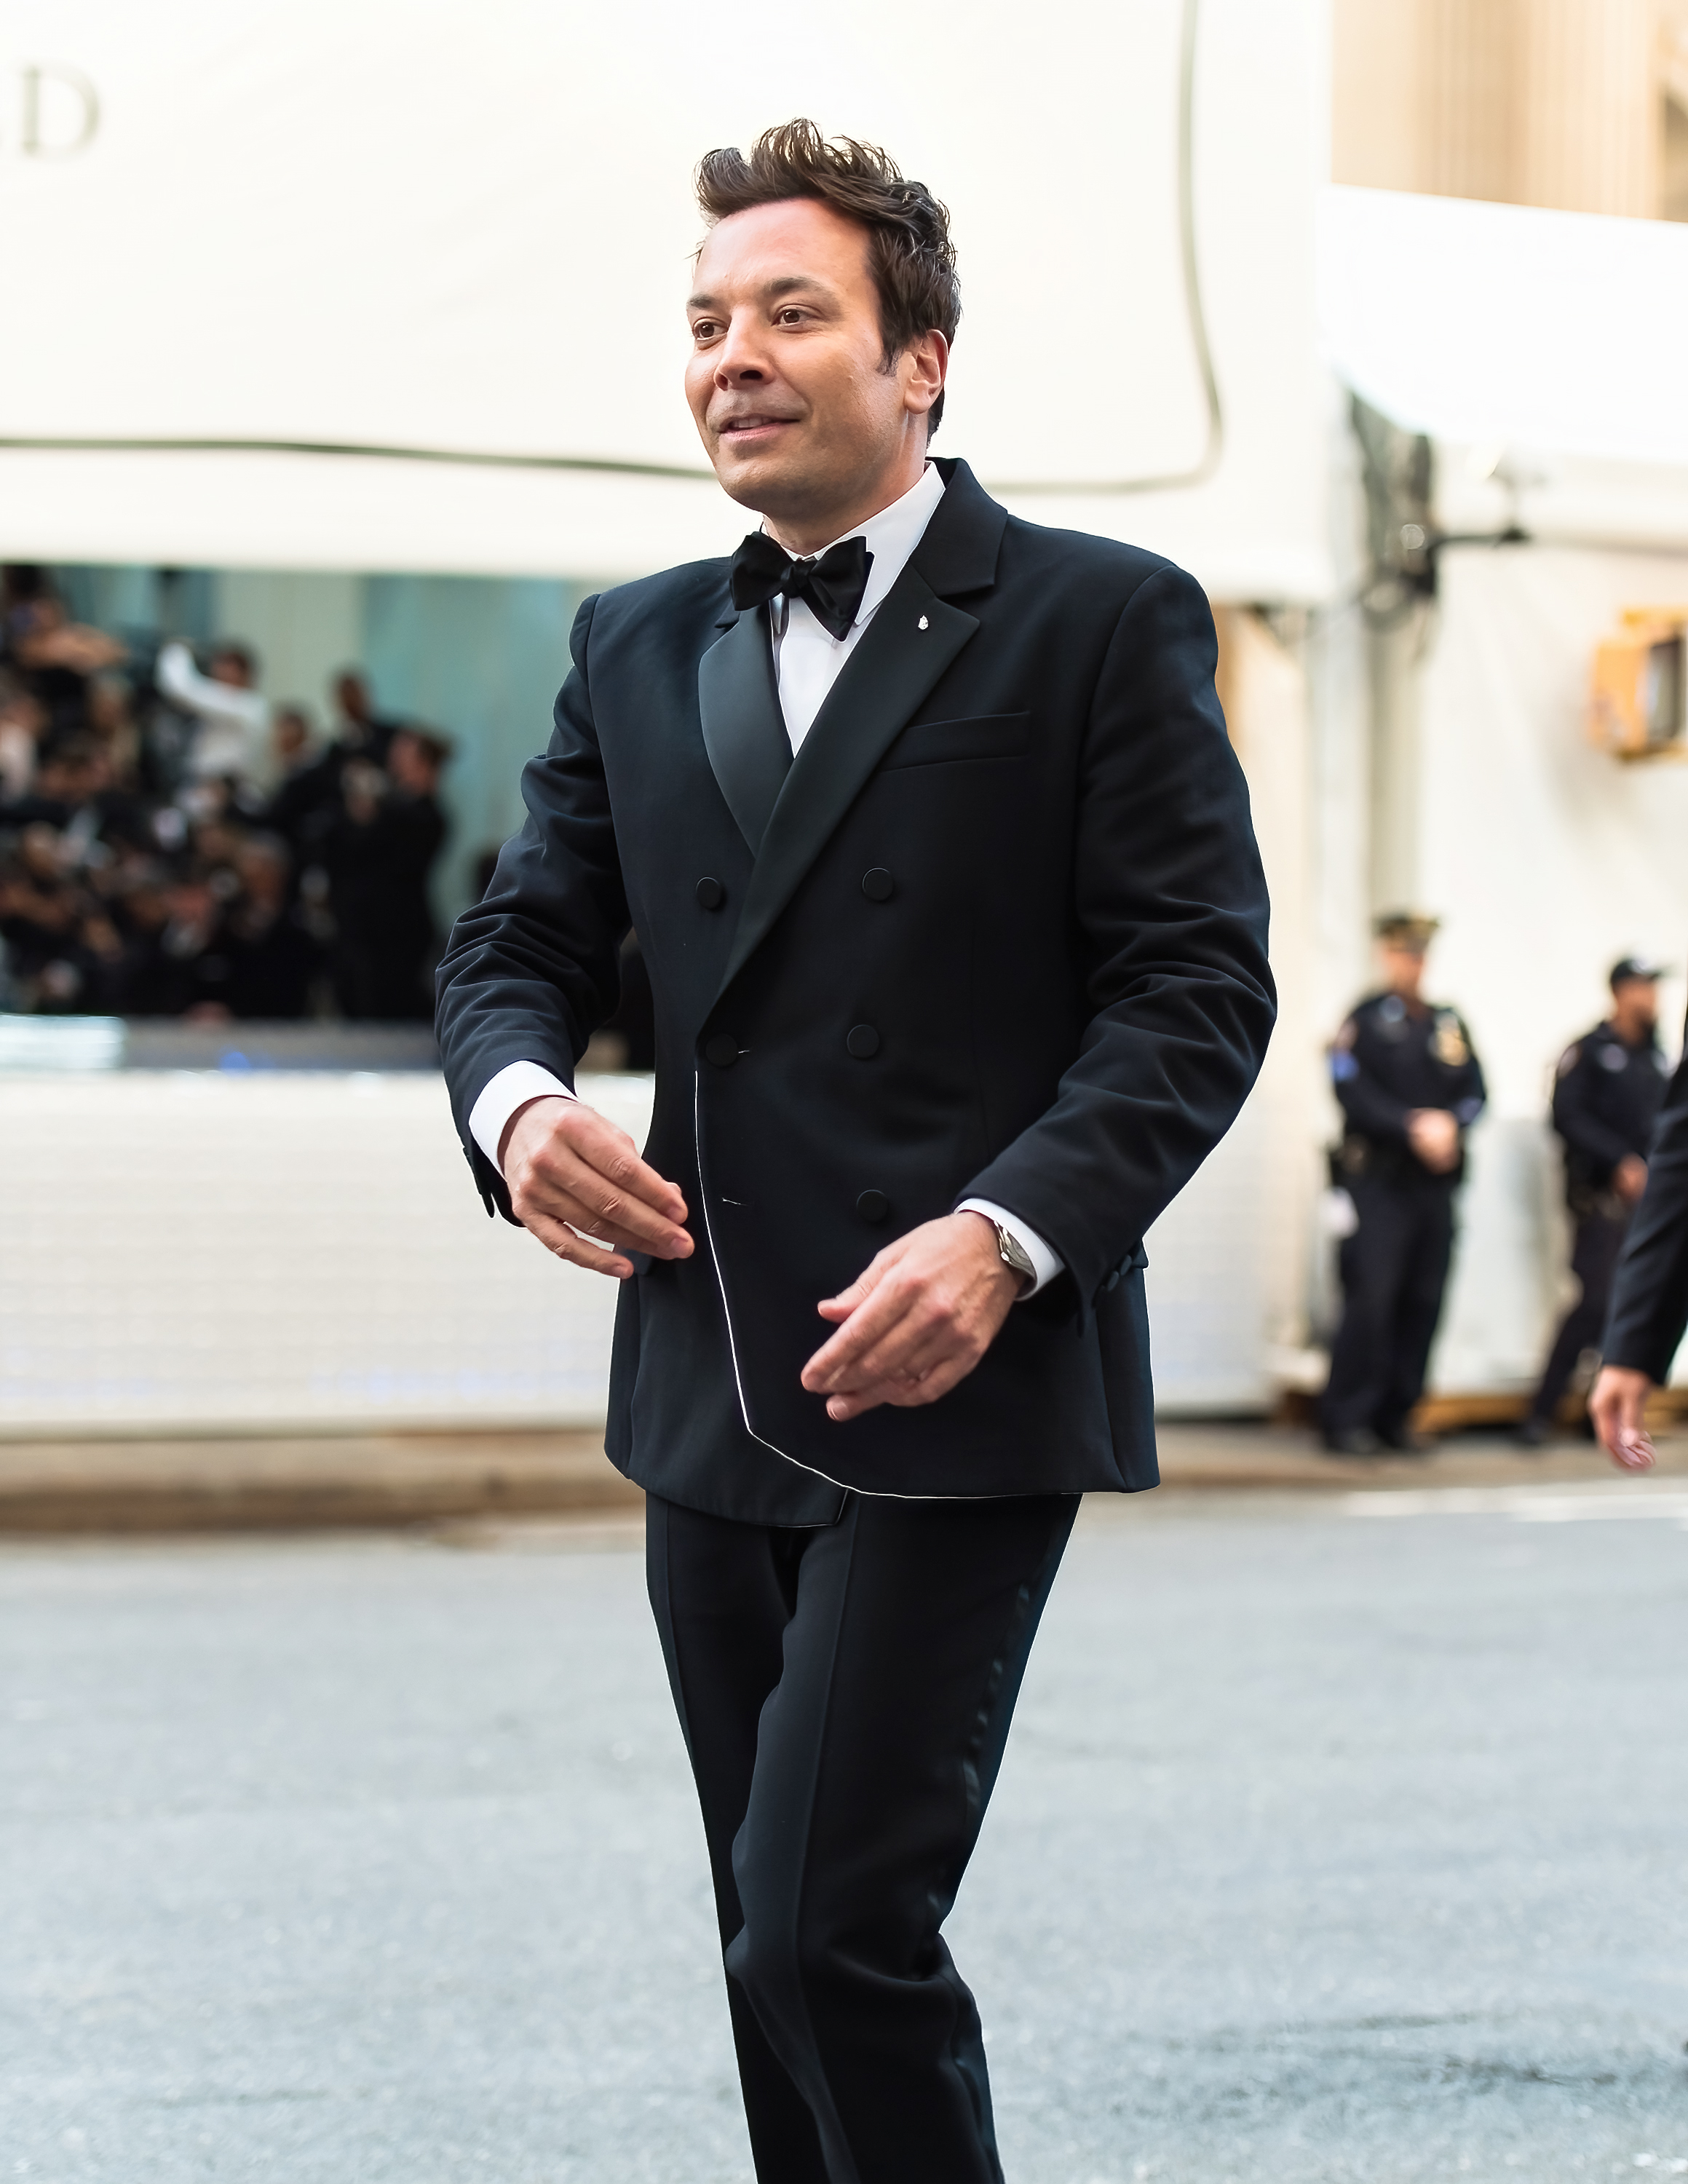 jimmy walking outside in a suit